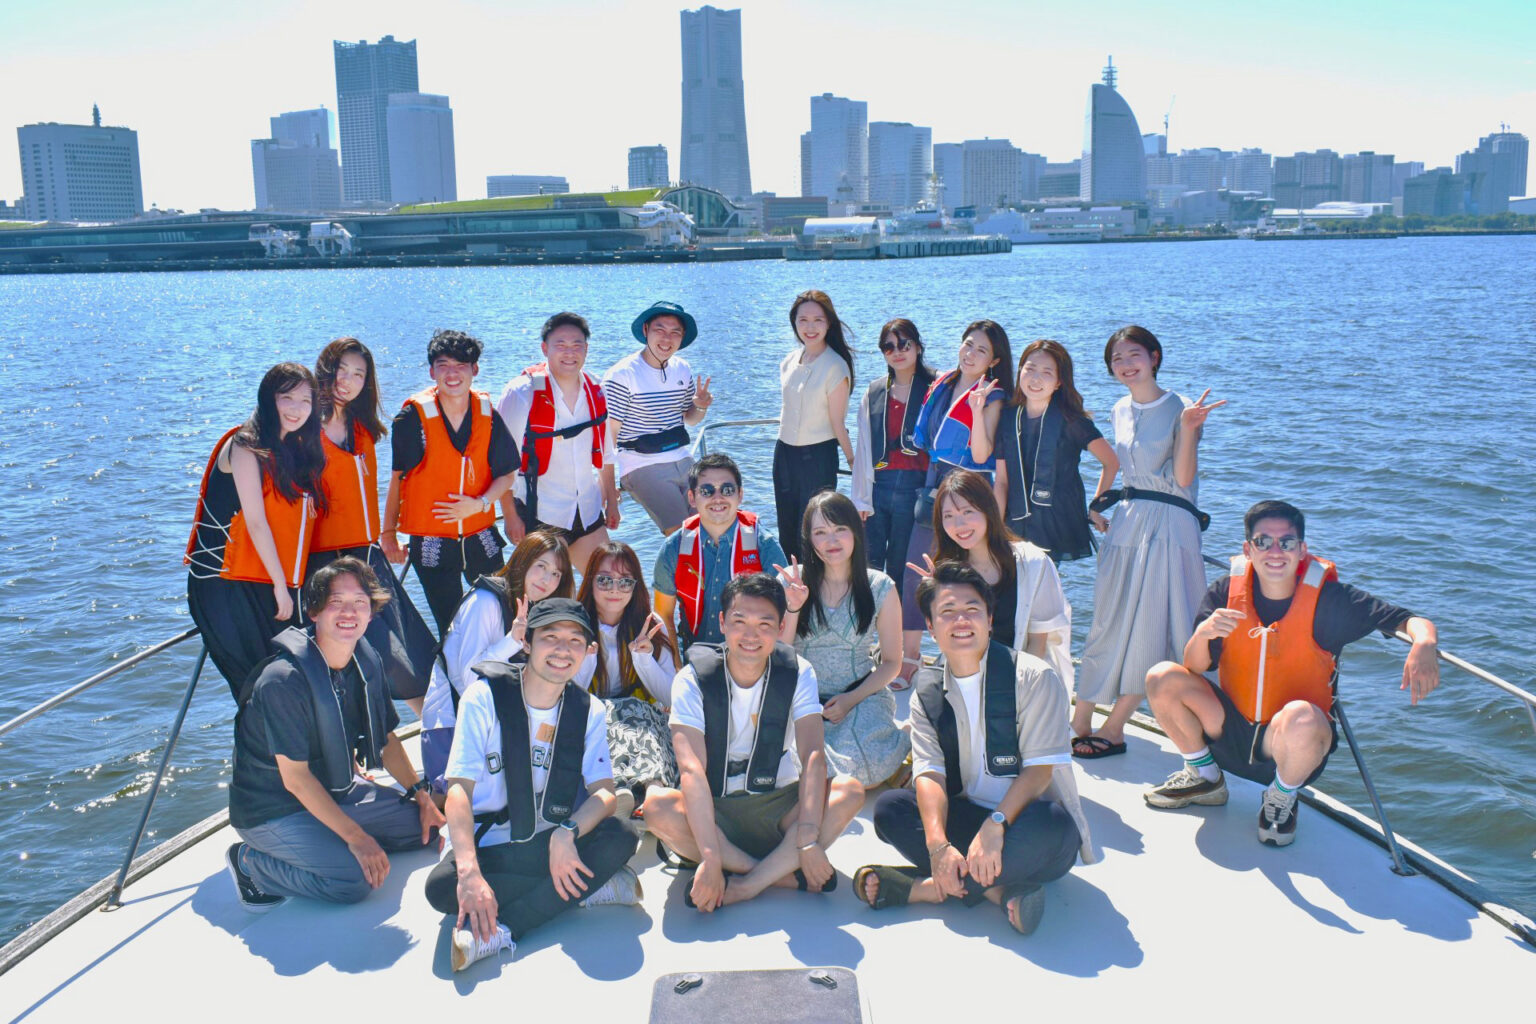 オリエンタルパール号のデッキで横浜の海辺を背景に集合写真を撮影